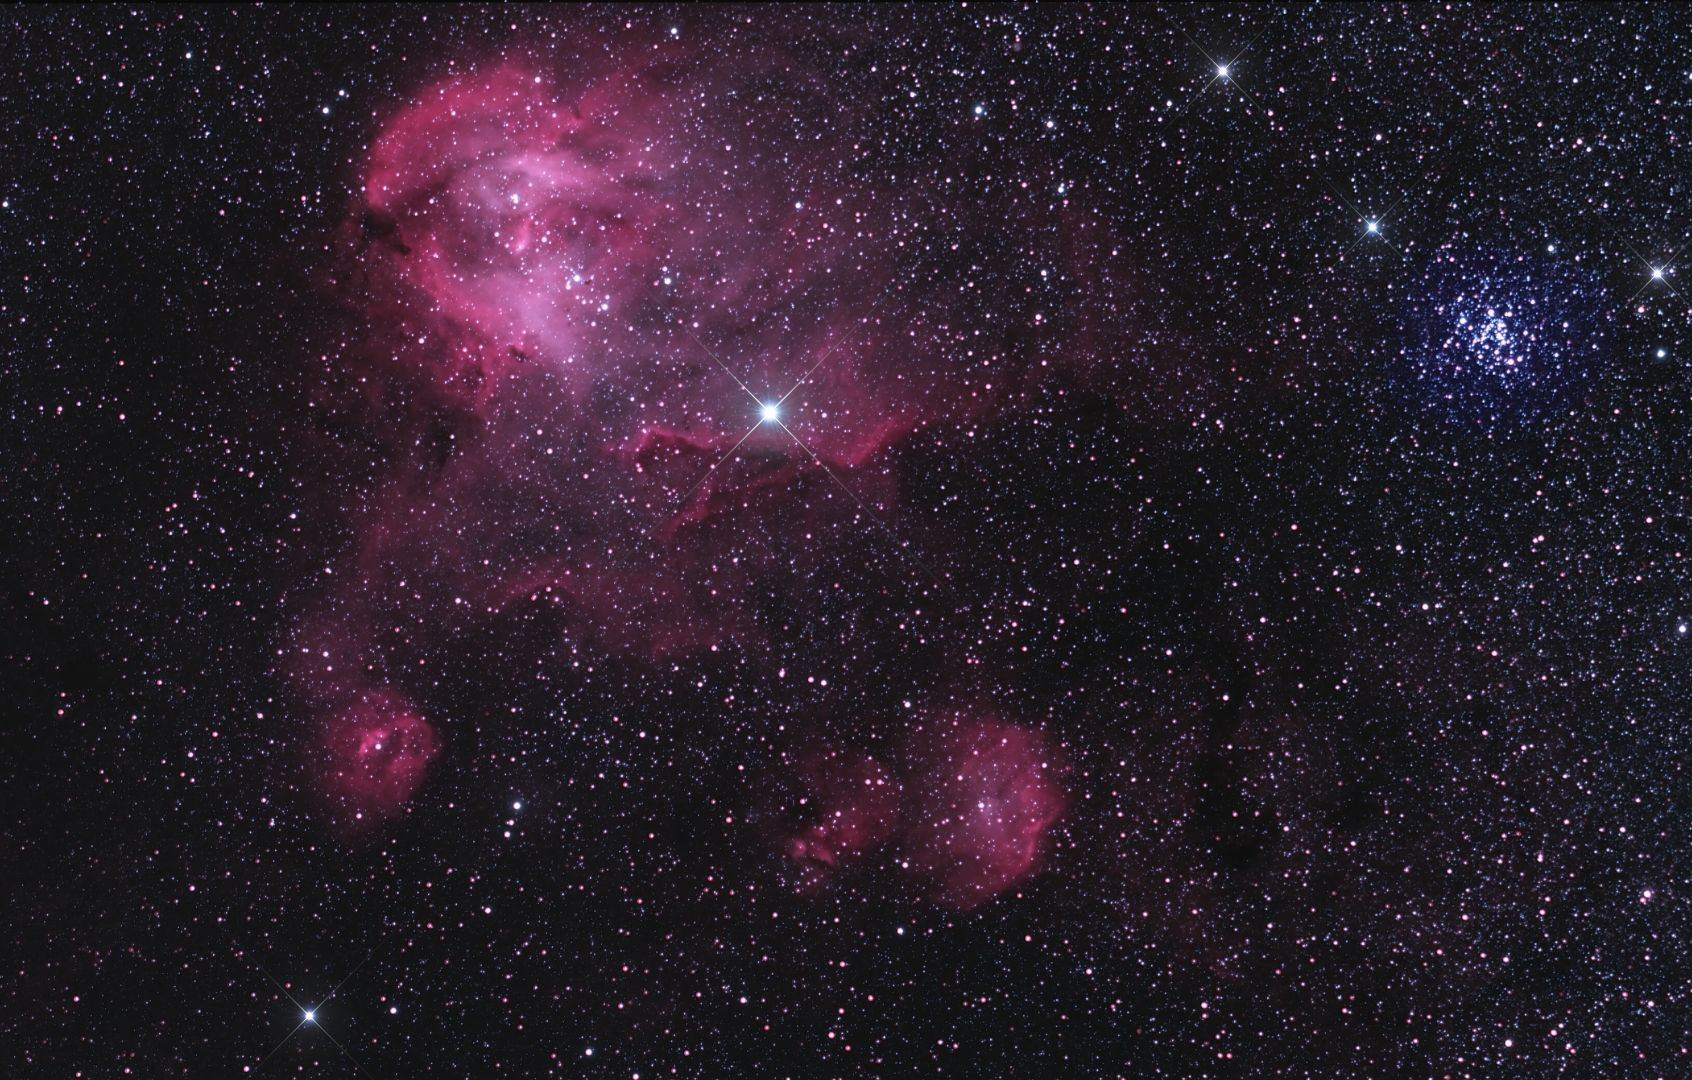 IC 2944 Running Chicken Nebula